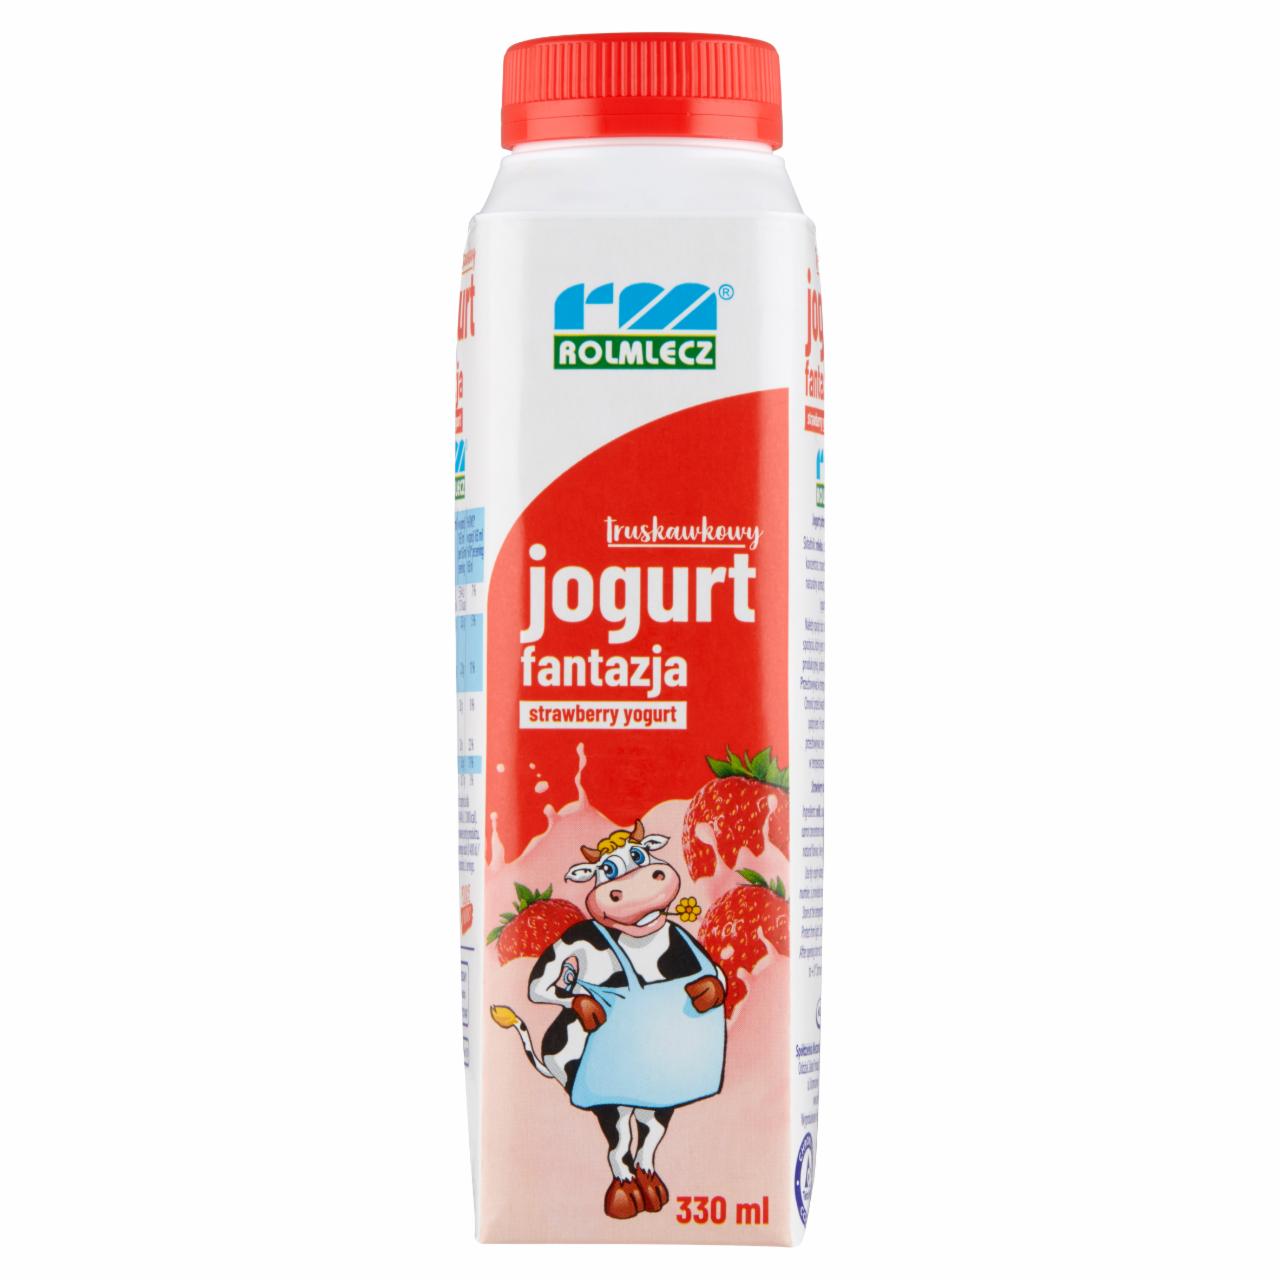 Zdjęcia - Rolmlecz Fantazja Jogurt truskawkowy 330 ml